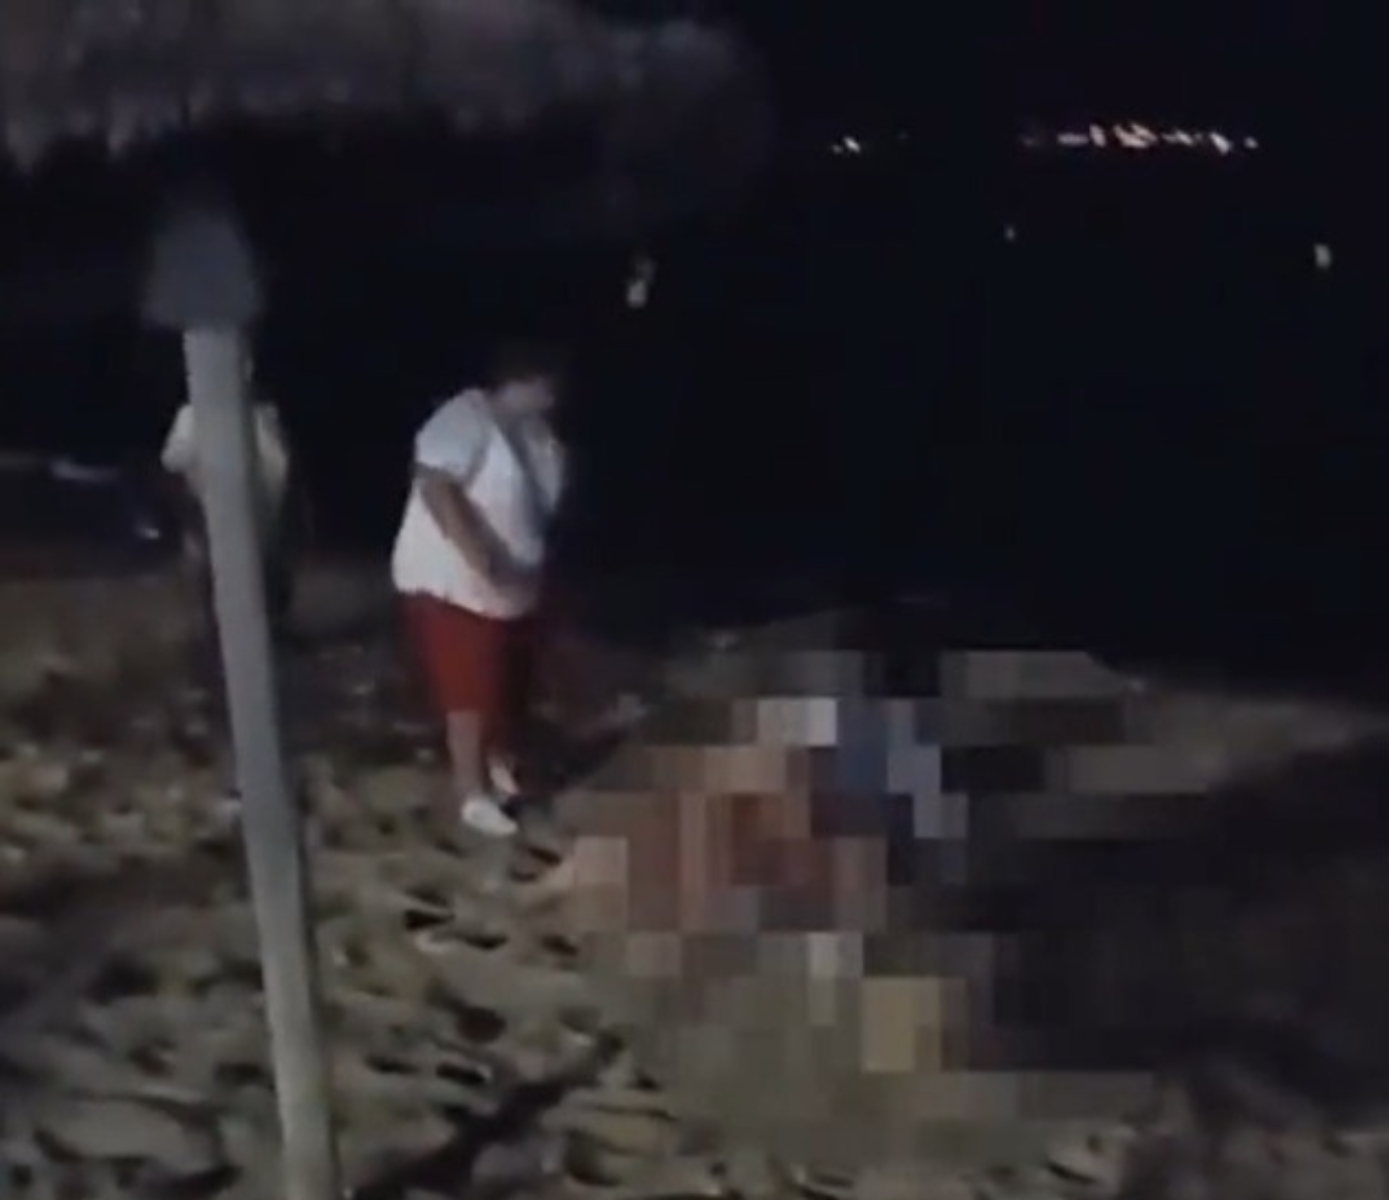  VÍDEO: Turistas jogam areia para espantar casal em momento íntimo na praia 